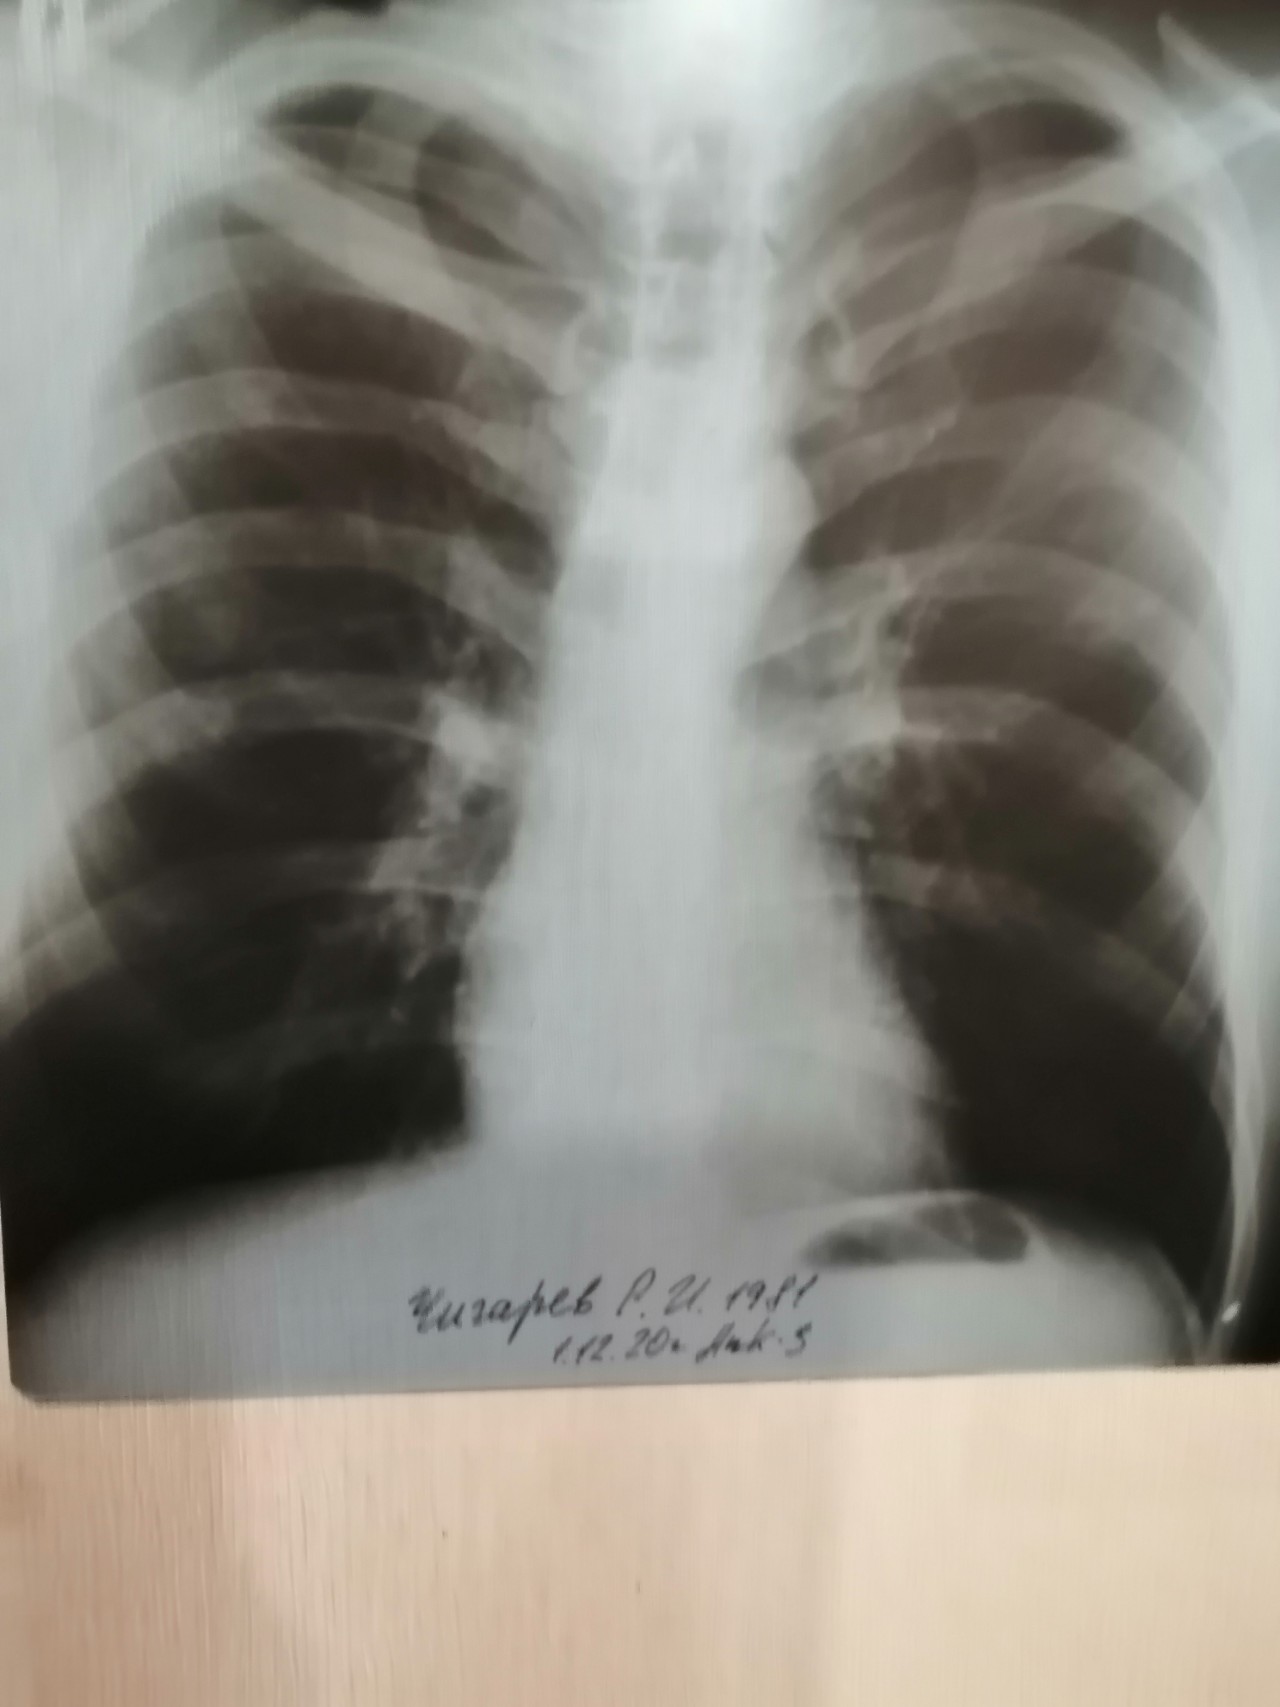 Снимок лёгких при туберкулезе фото. 69 % Поражение лёгких. Инфертивное поражение легких. Поражение легких 3